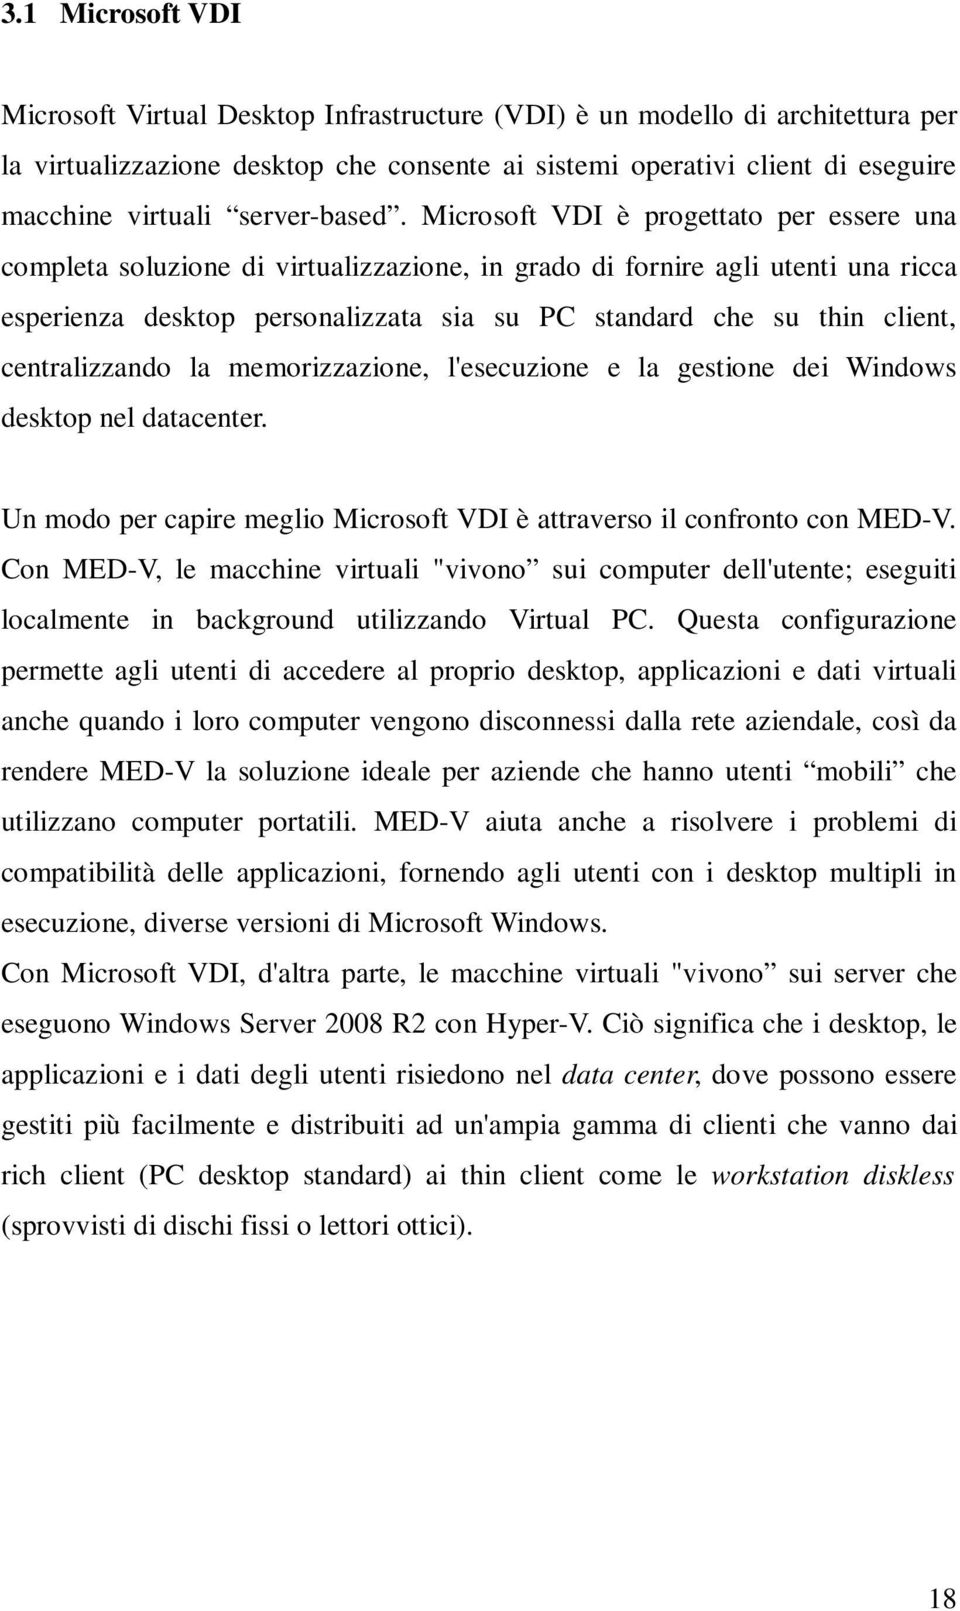 Microsoft VDI è progettato per essere una completa soluzione di virtualizzazione, in grado di fornire agli utenti una ricca esperienza desktop personalizzata sia su PC standard che su thin client,